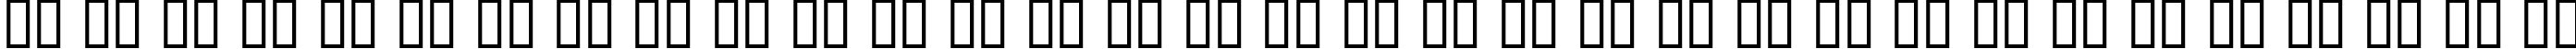 Пример написания русского алфавита шрифтом Bizarre